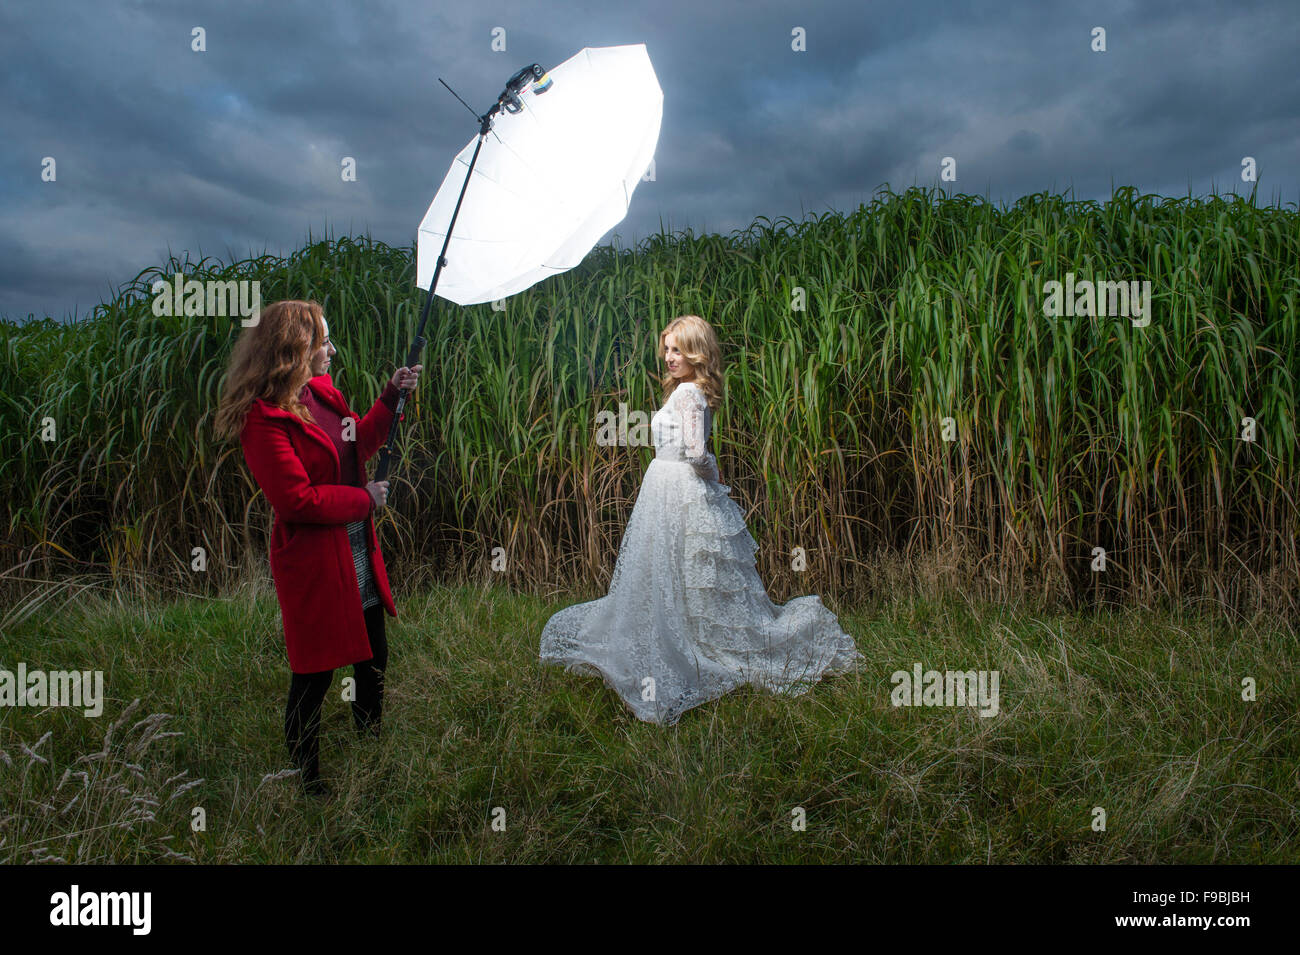 Une photo de mode-shoot : Une jeune femme blonde habillée comme une épouse modèle portant une robe de dentelle blanche photographié debout à côté d'un champ d'herbe à éléphant, UK, avec une autre femme tenant une tête flash parapluie blanc brolly sur un poteau pour éclairer la scène Banque D'Images